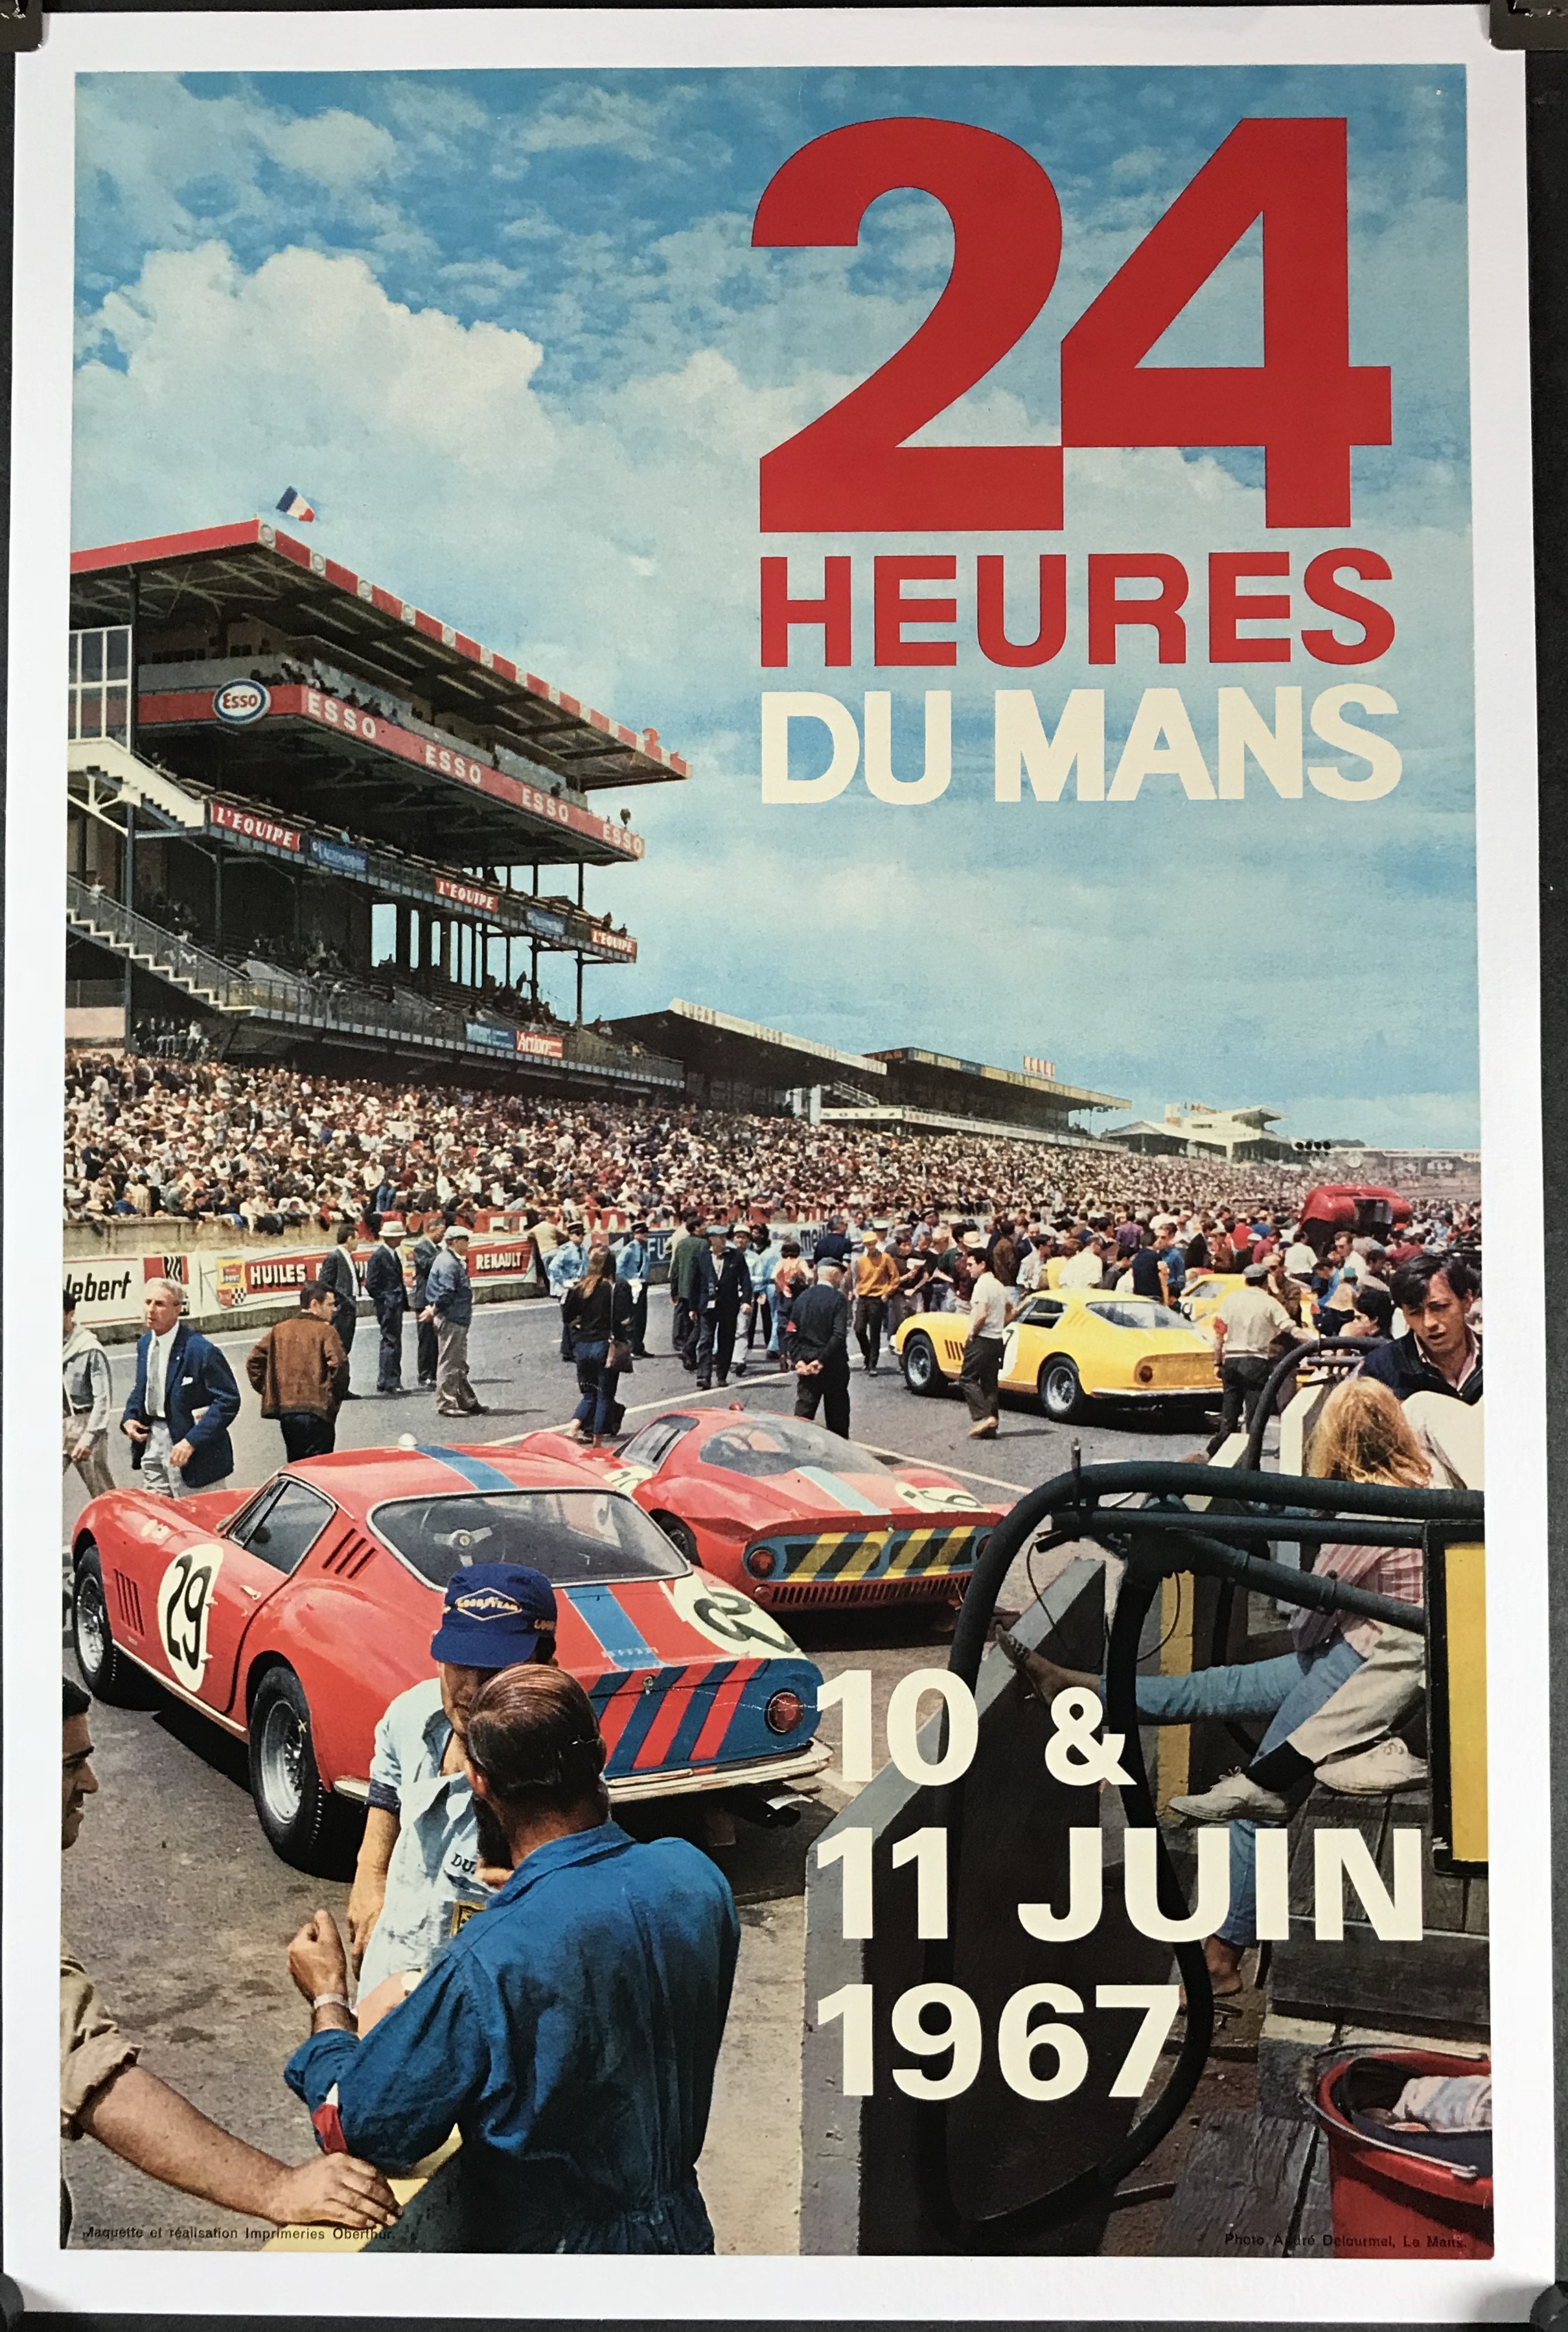 1993-24 Hours Le Mans France Automobile Race Car Advertisement Vintage Poster 